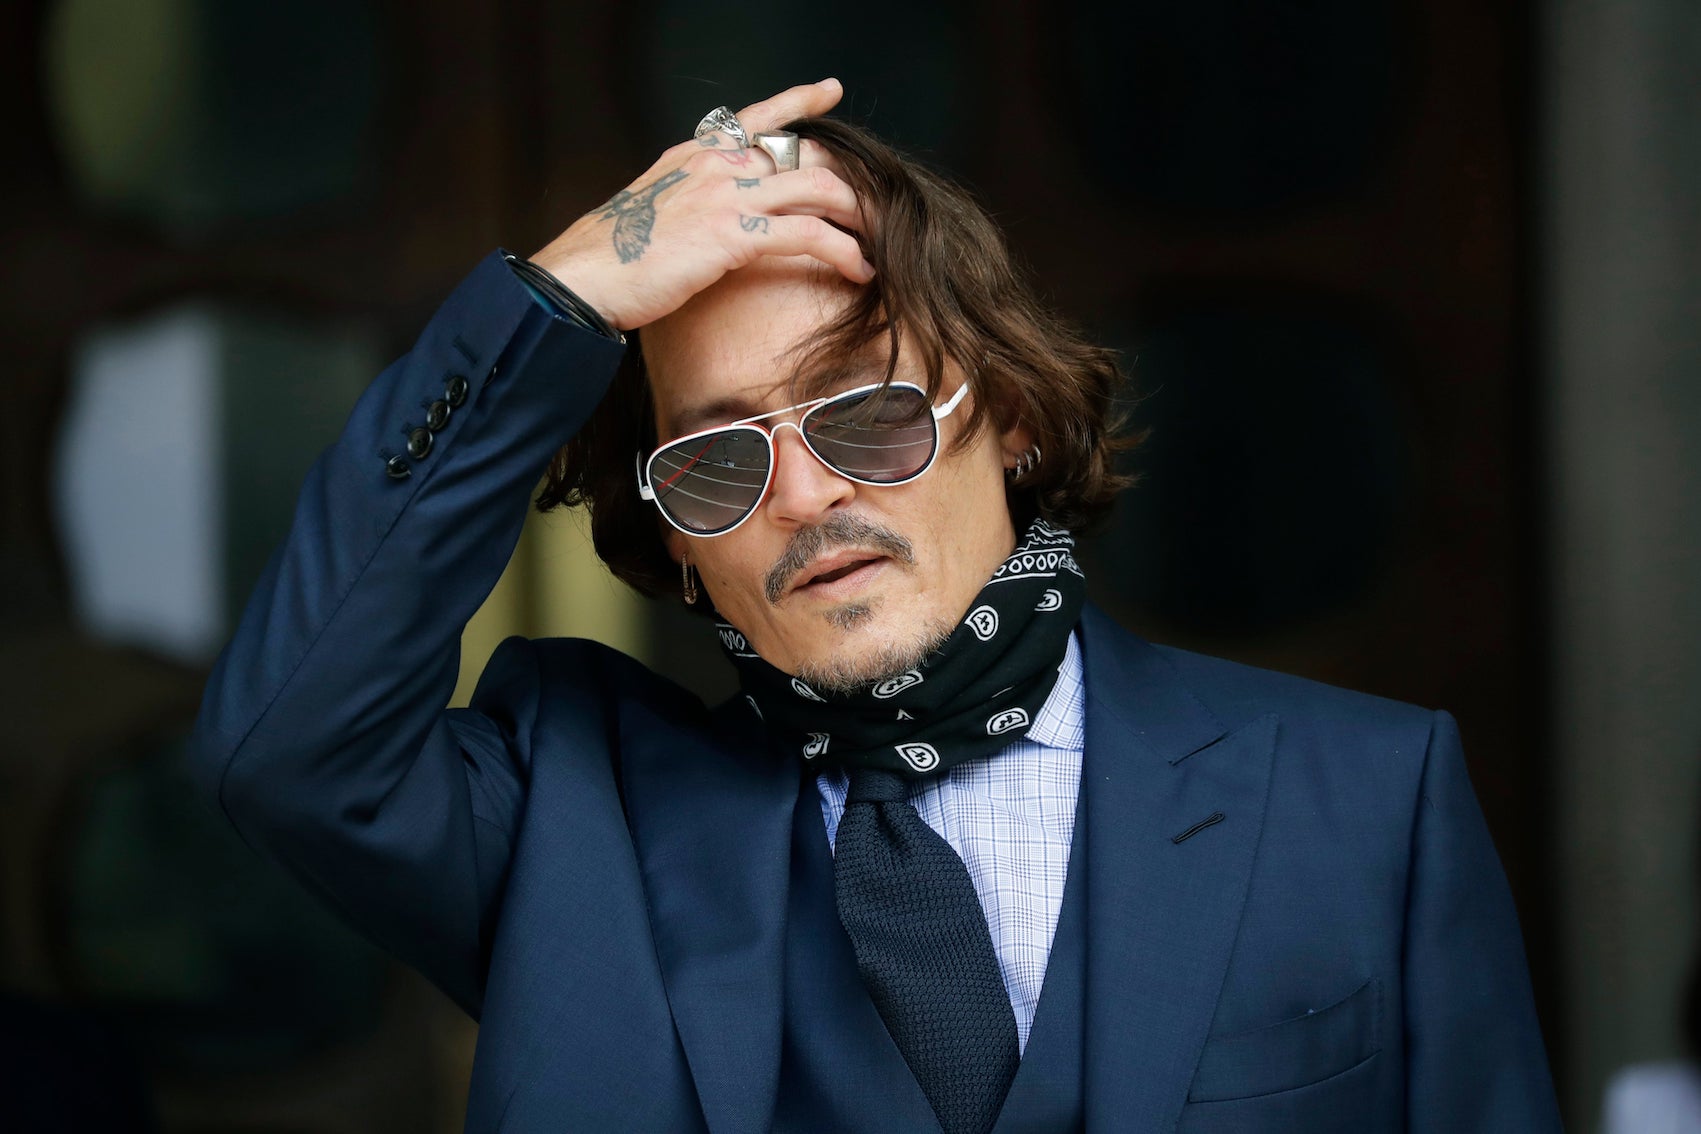 Berapa nilai Johnny Depp?